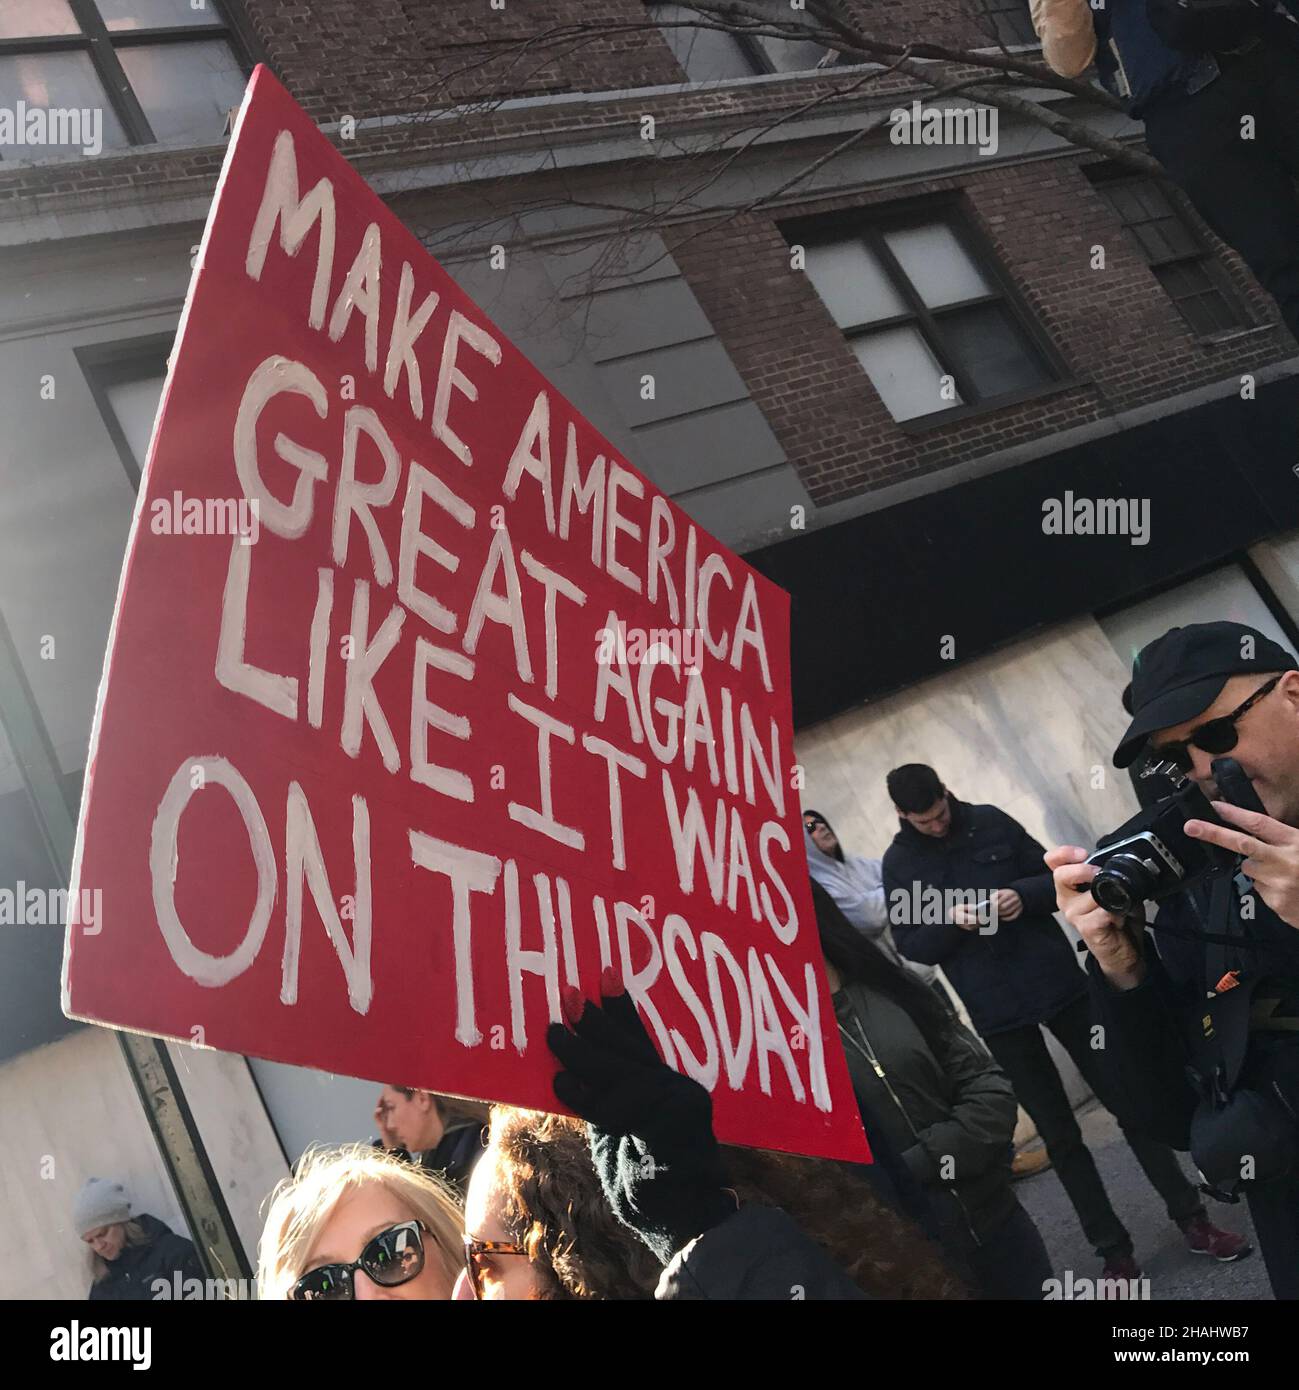 2017 Women's March, NYC, Januar 21. Das Zeichen bezieht sich auf Donnerstag, den 19. Januar, den Tag vor der Amtseinführung von Donald Trump. Stockfoto